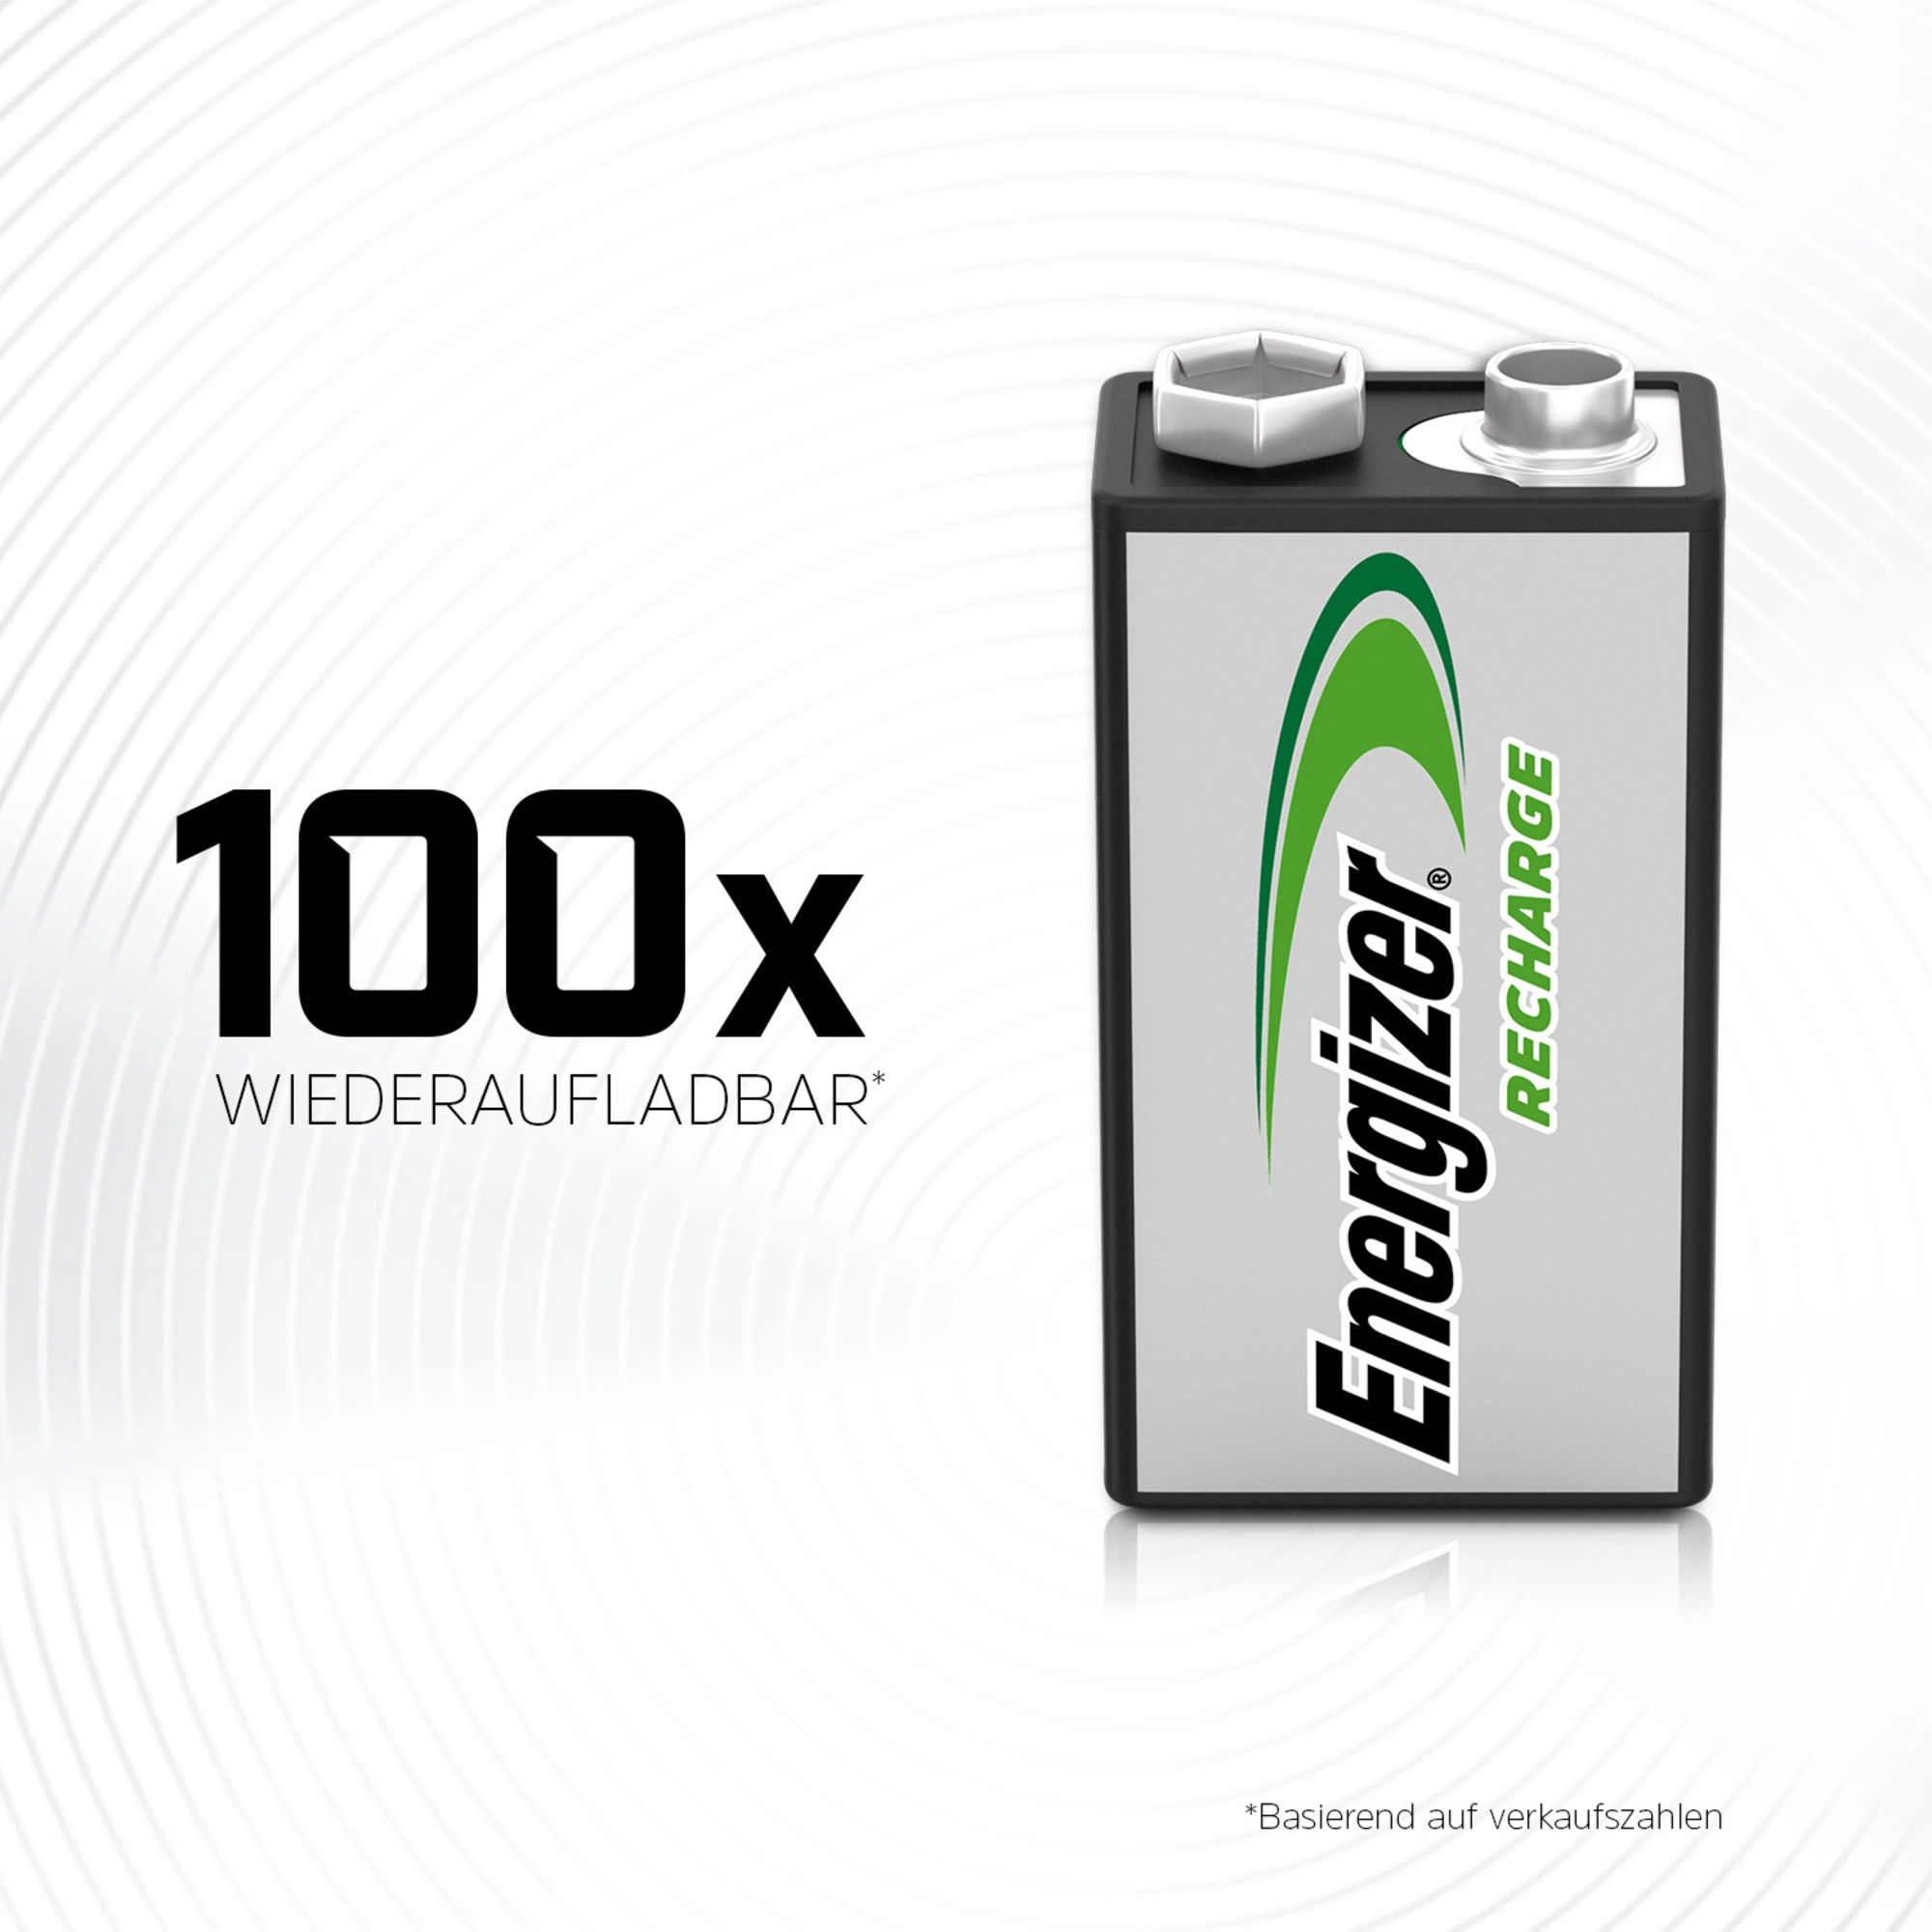 Energizer Pile rechargeable Power Plus E-Block Alcaline 175 mAh / 9 V